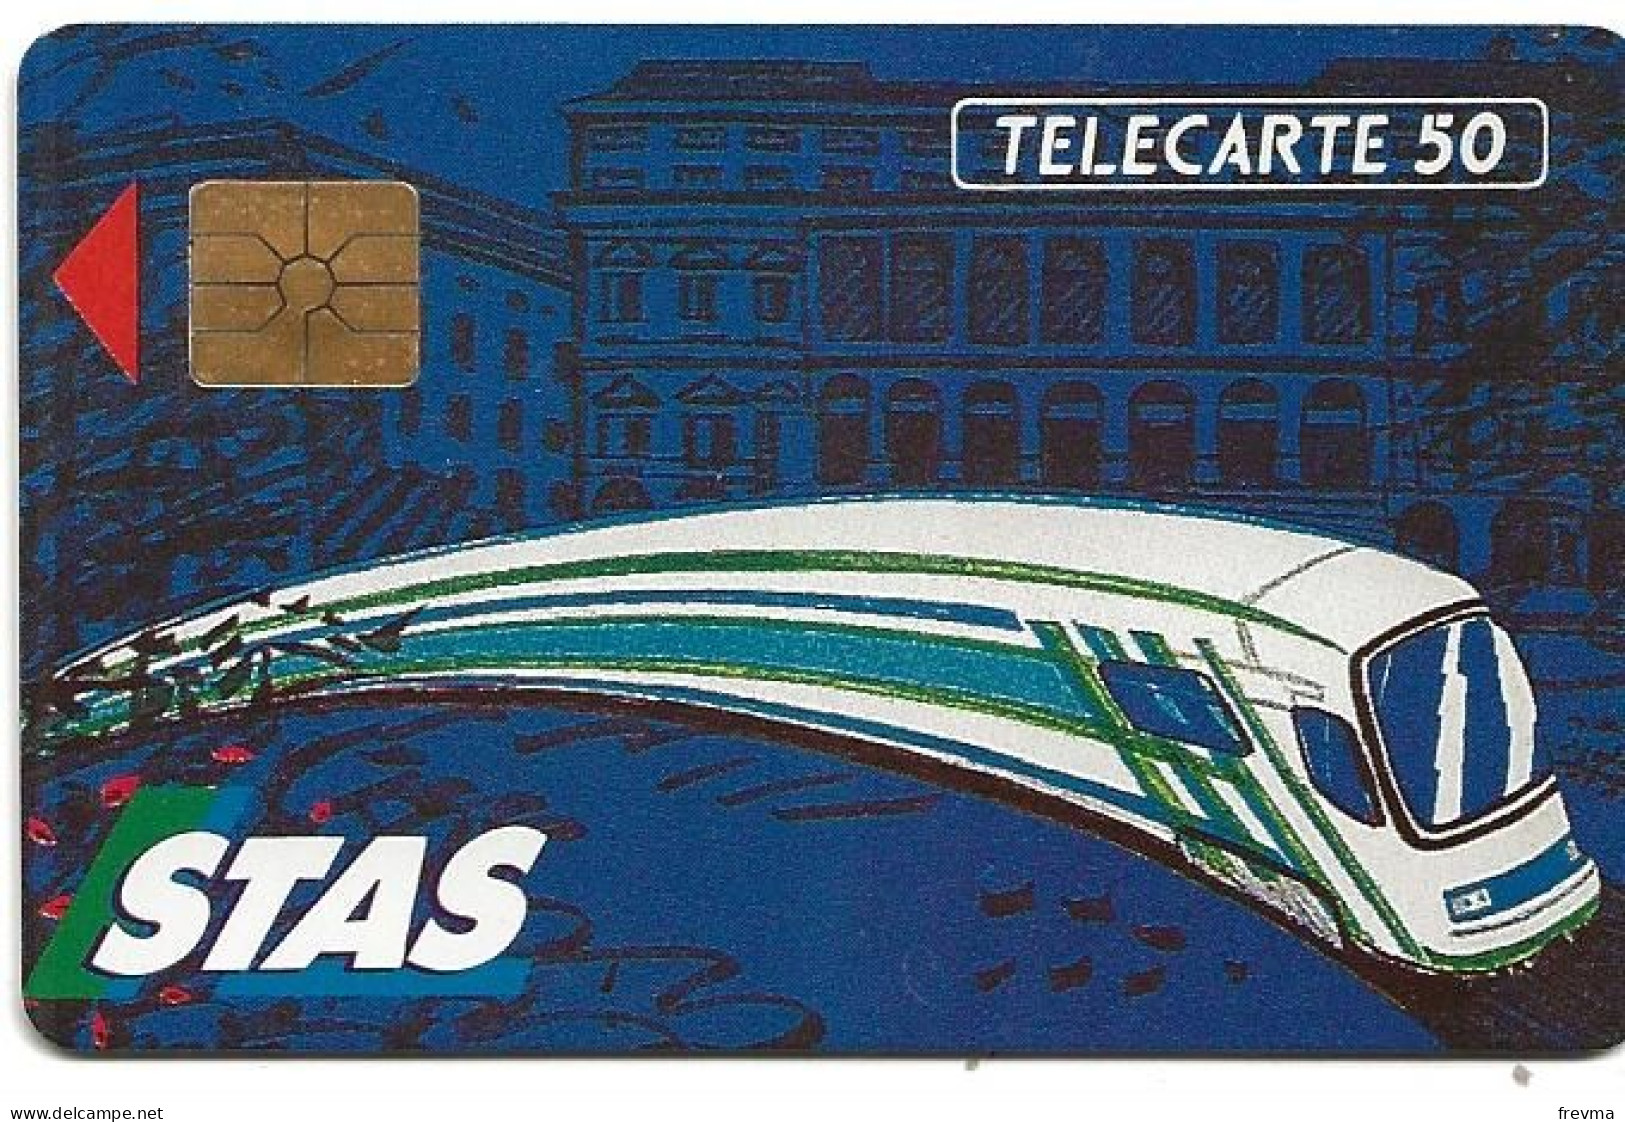 Telecarte F199 Stas 50 Unités Luxe GEM - 1991